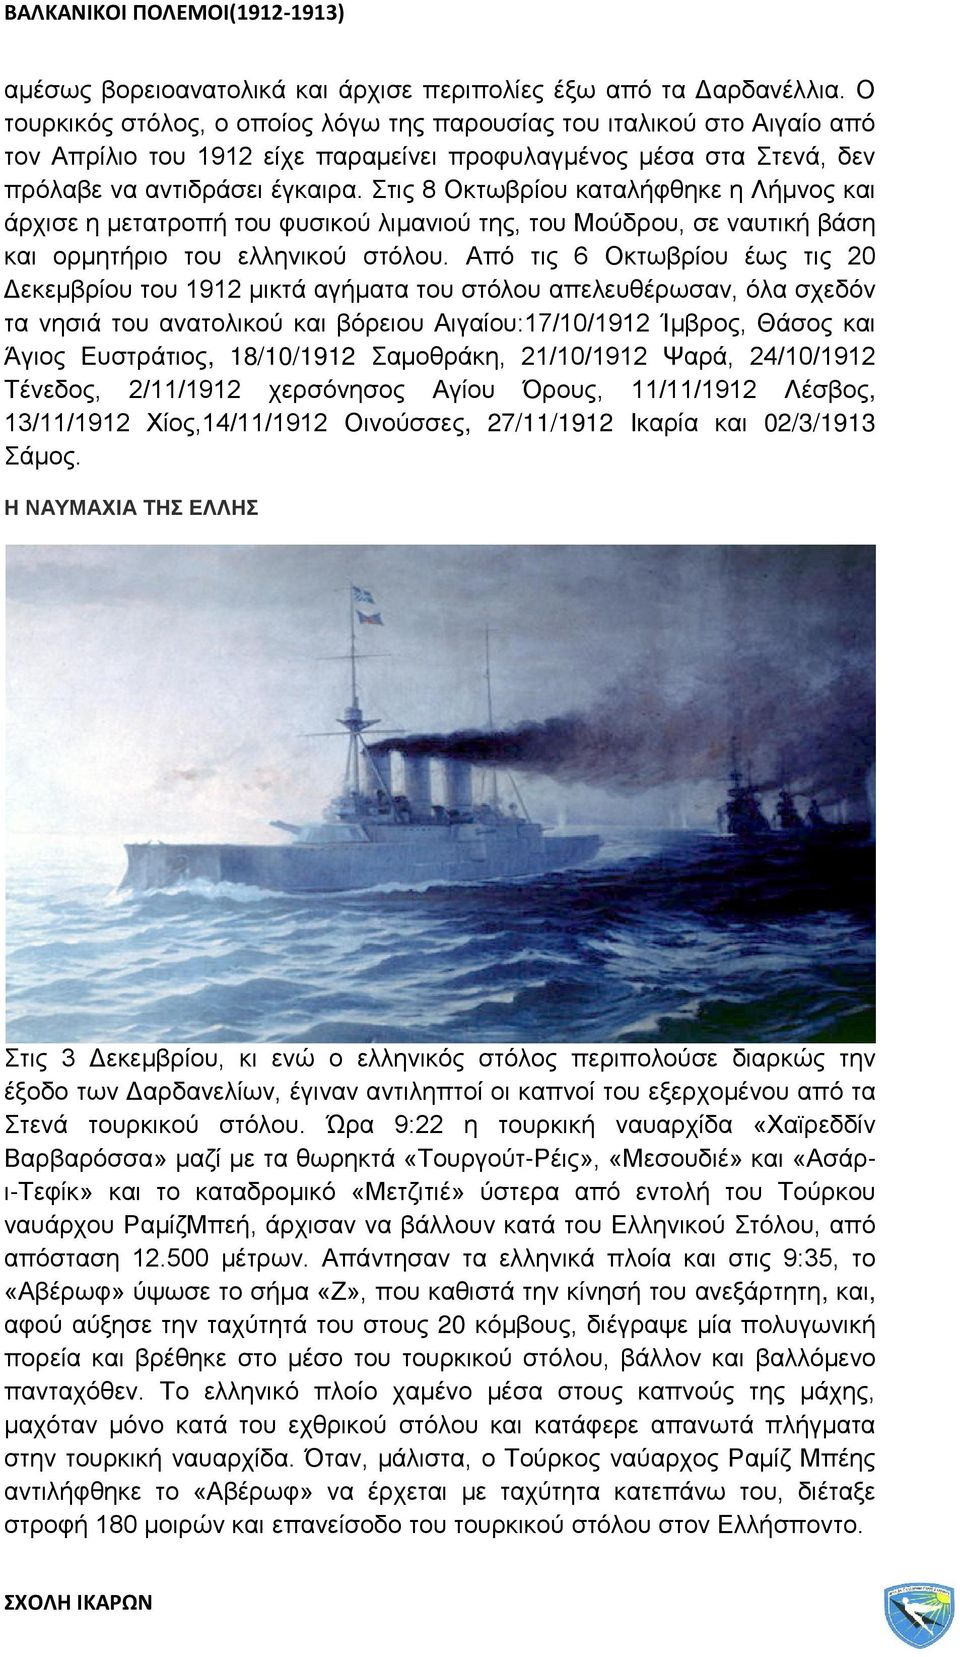 Στις 8 Οκτωβρίου καταλήφθηκε η Λήμνος και άρχισε η μετατροπή του φυσικού λιμανιού της, του Μούδρου, σε ναυτική βάση και ορμητήριο του ελληνικού στόλου.